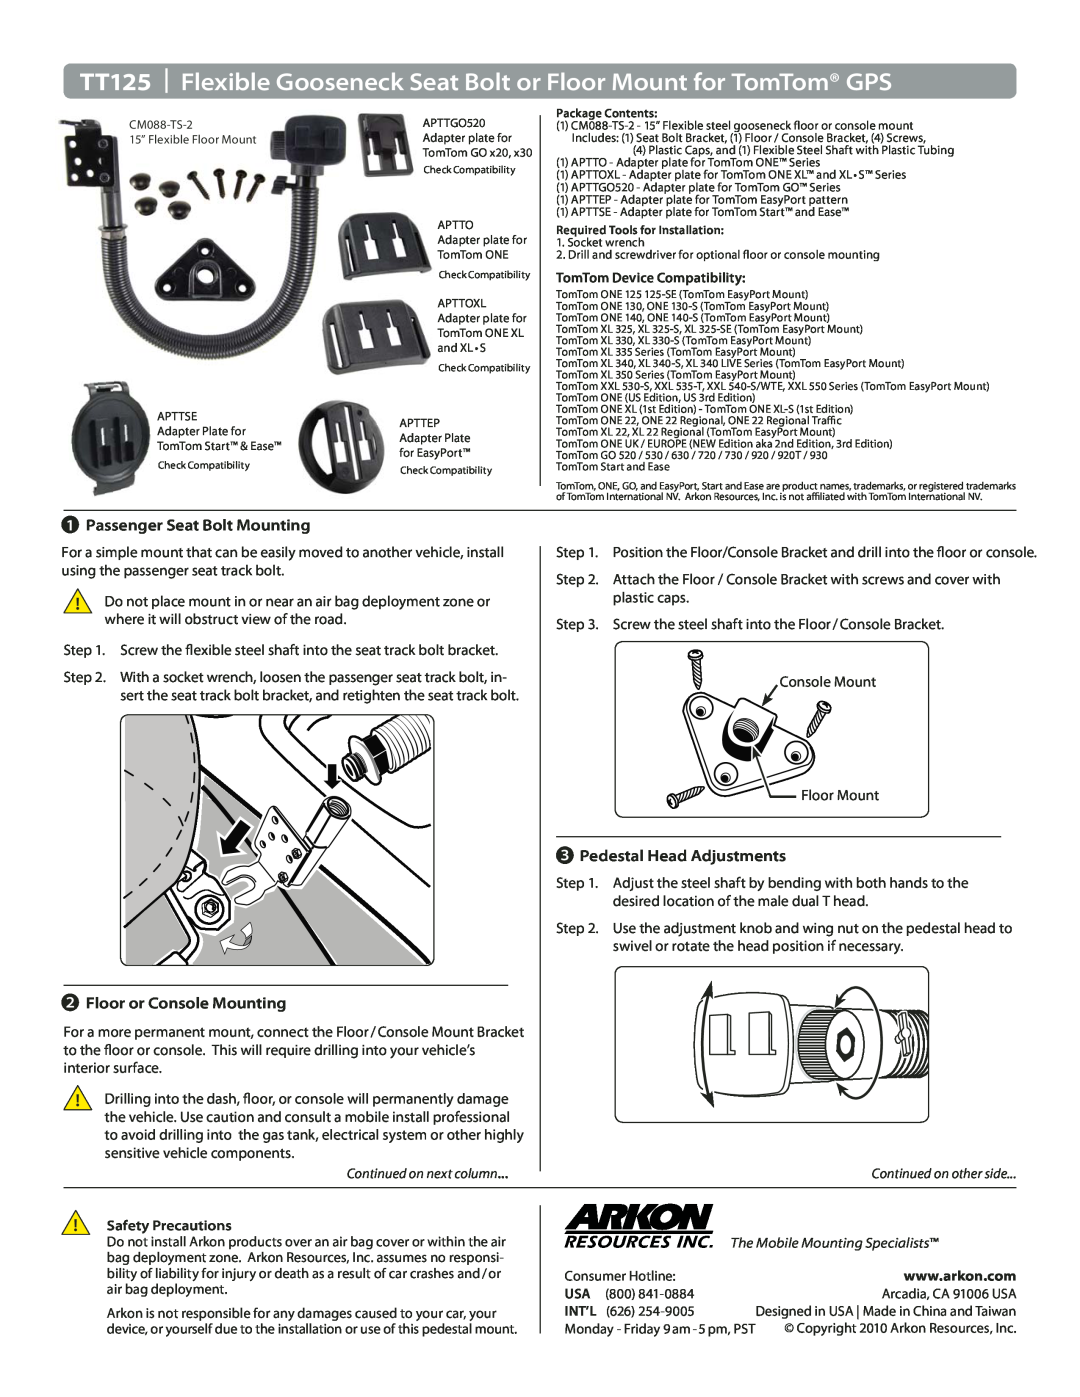 Binatone manual TT125 Flexible Gooseneck Seat Bolt or Floor Mount for TomTom GPS, Passenger Seat Bolt Mounting, Int’L 